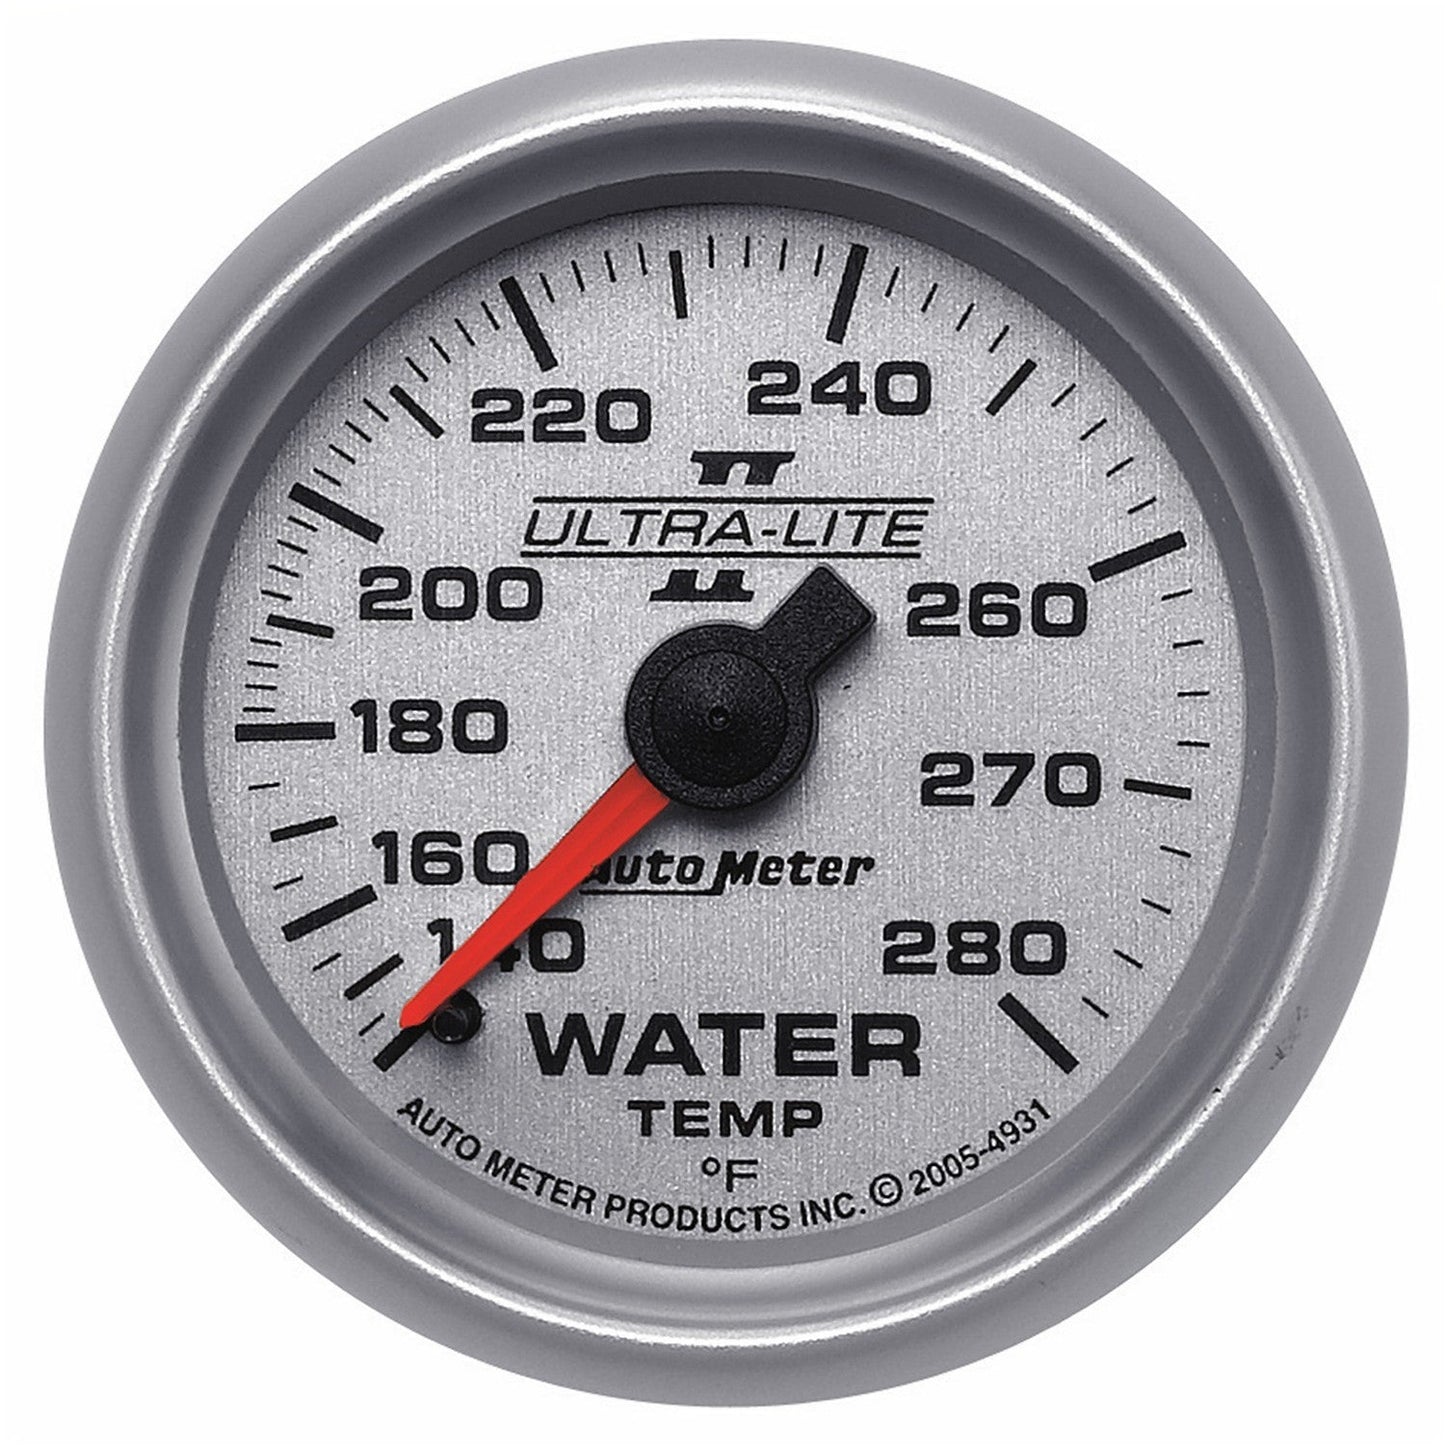 AutoMeter - 2-1/16" TEMPERATURA DEL AGUA, 140-280 °F, 6 PIES, MECÁNICO, ULTRA-LITE II (4931) 